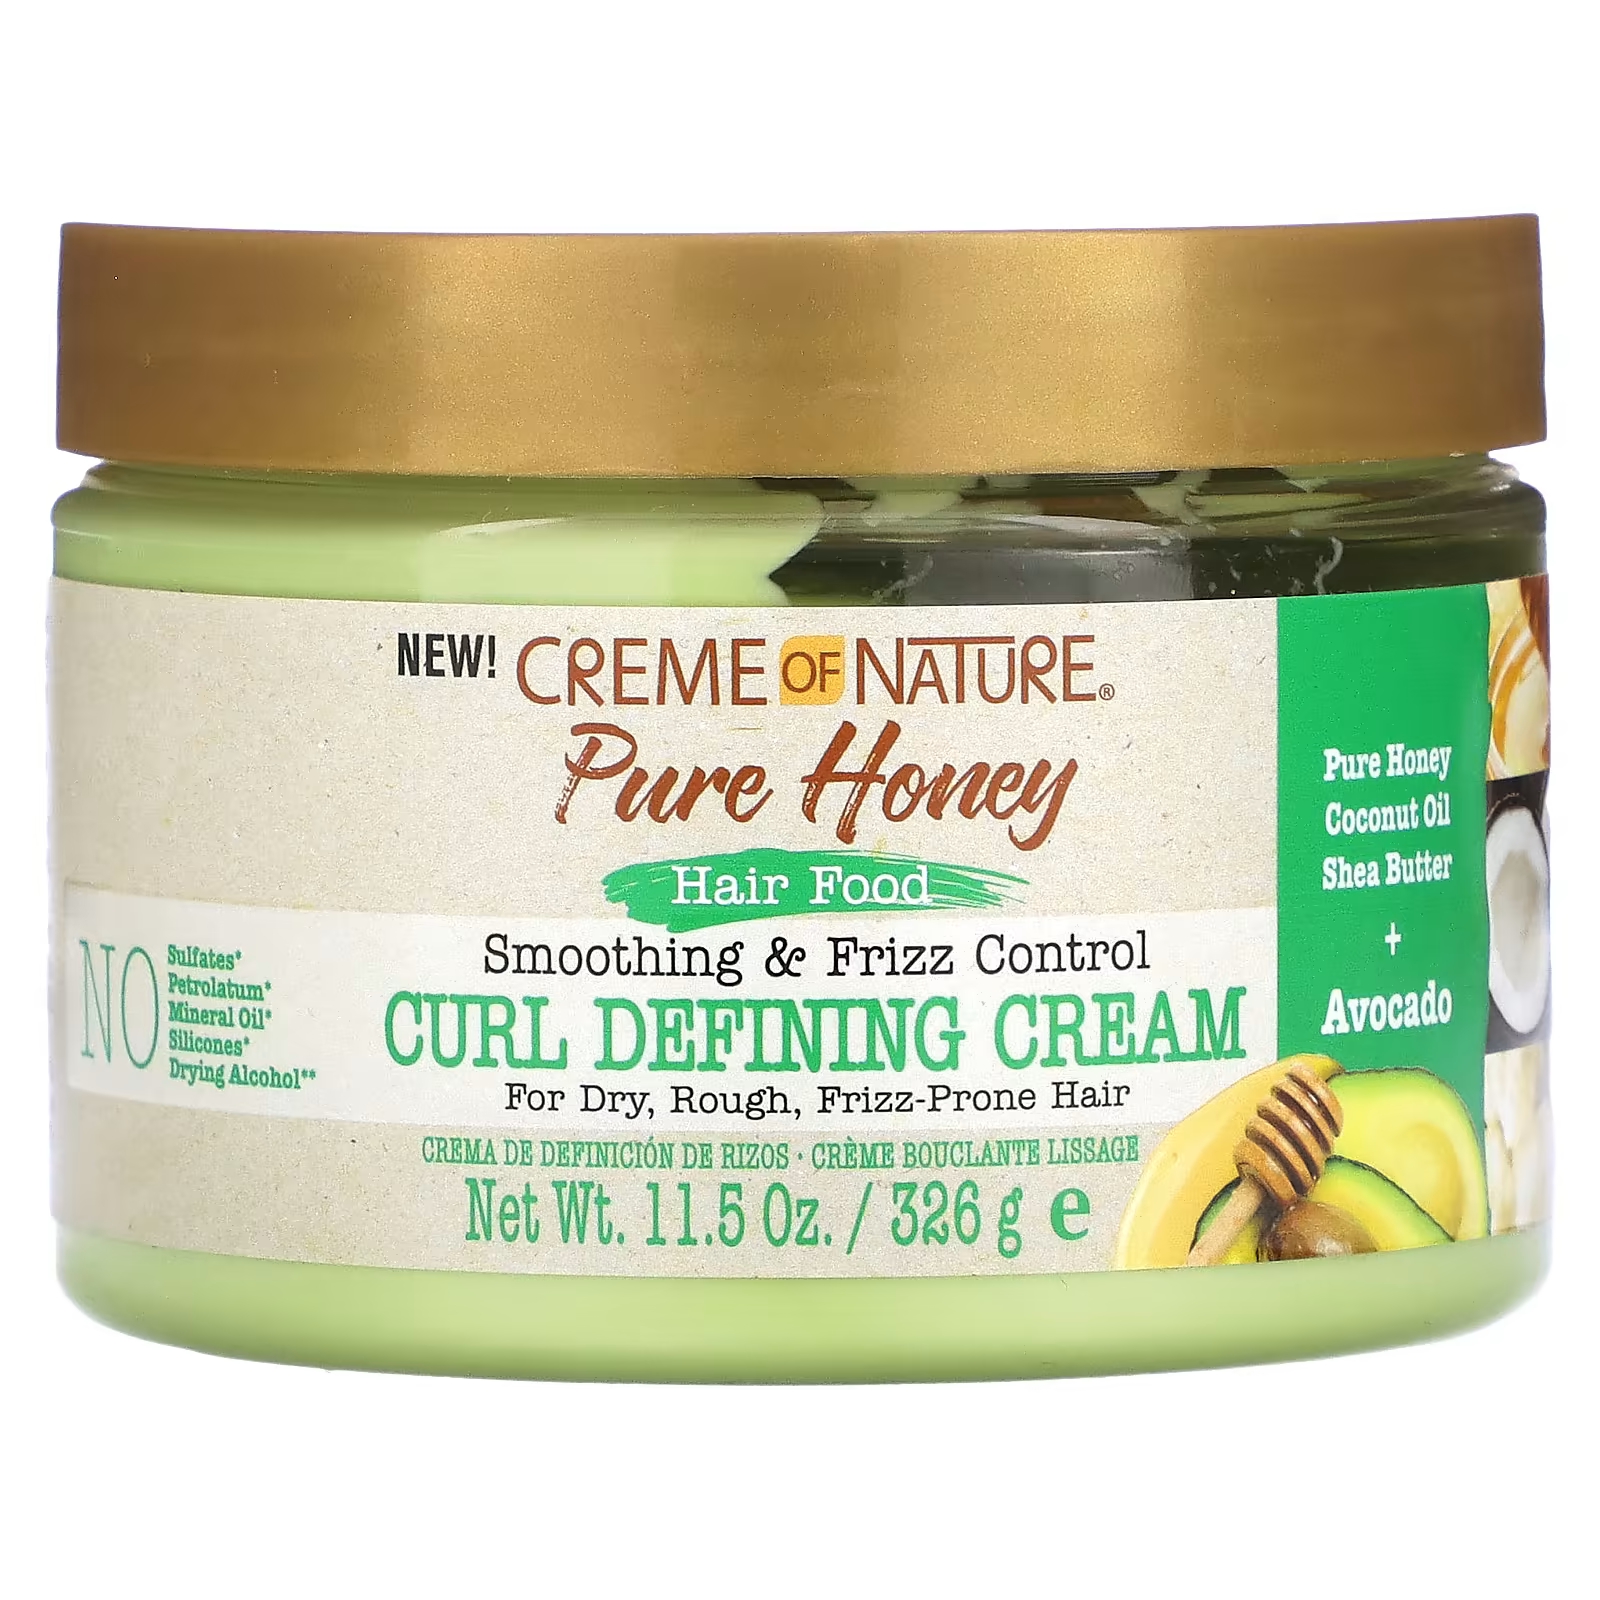 Крем для разглаживания и контроля вьющихся волос Creme Of Nature Pure Honey определяющий кудри, 326 г масло ши keri питательное